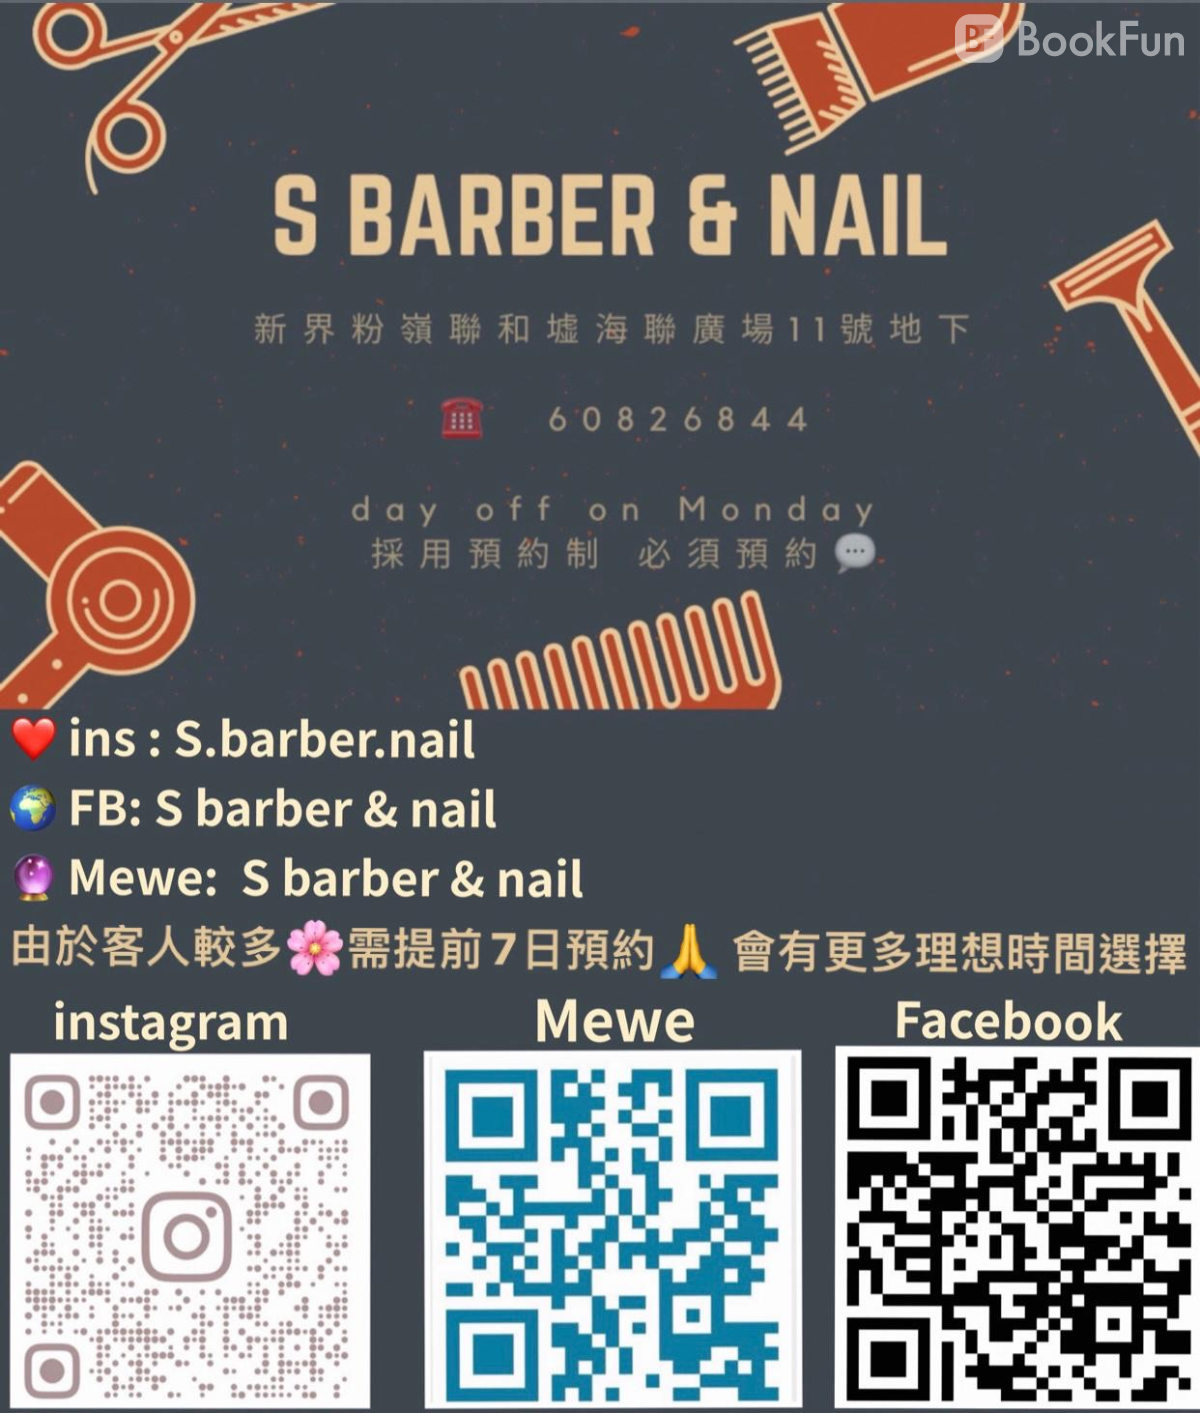 S Barber & Nail